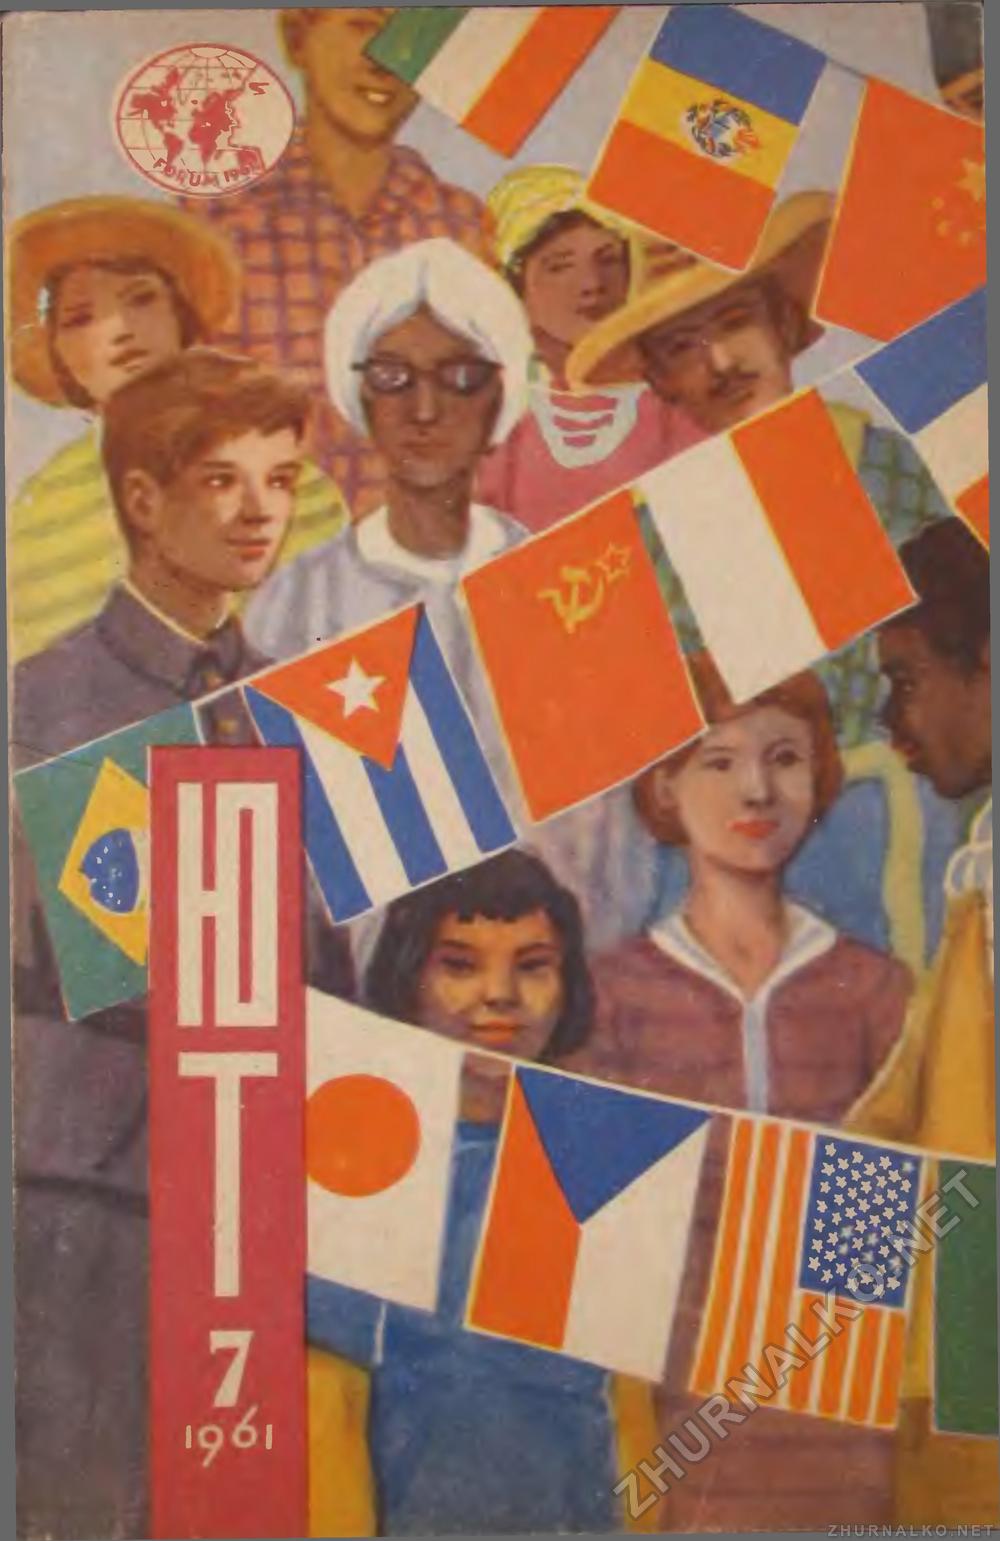   1961-07,  1